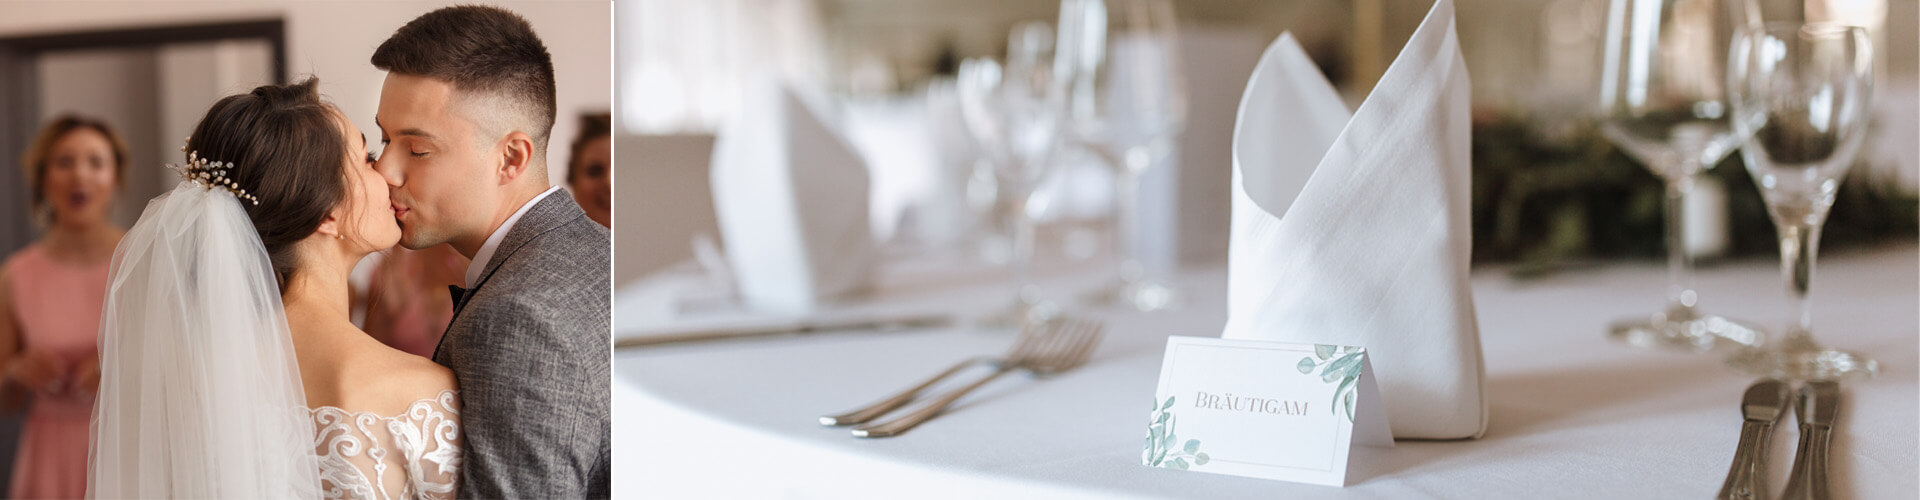 Tischkarten Hochzeit - gedeckter Tisch mit Tischkarte beschriftet mit Bräutigam und küssendem Brautpaar